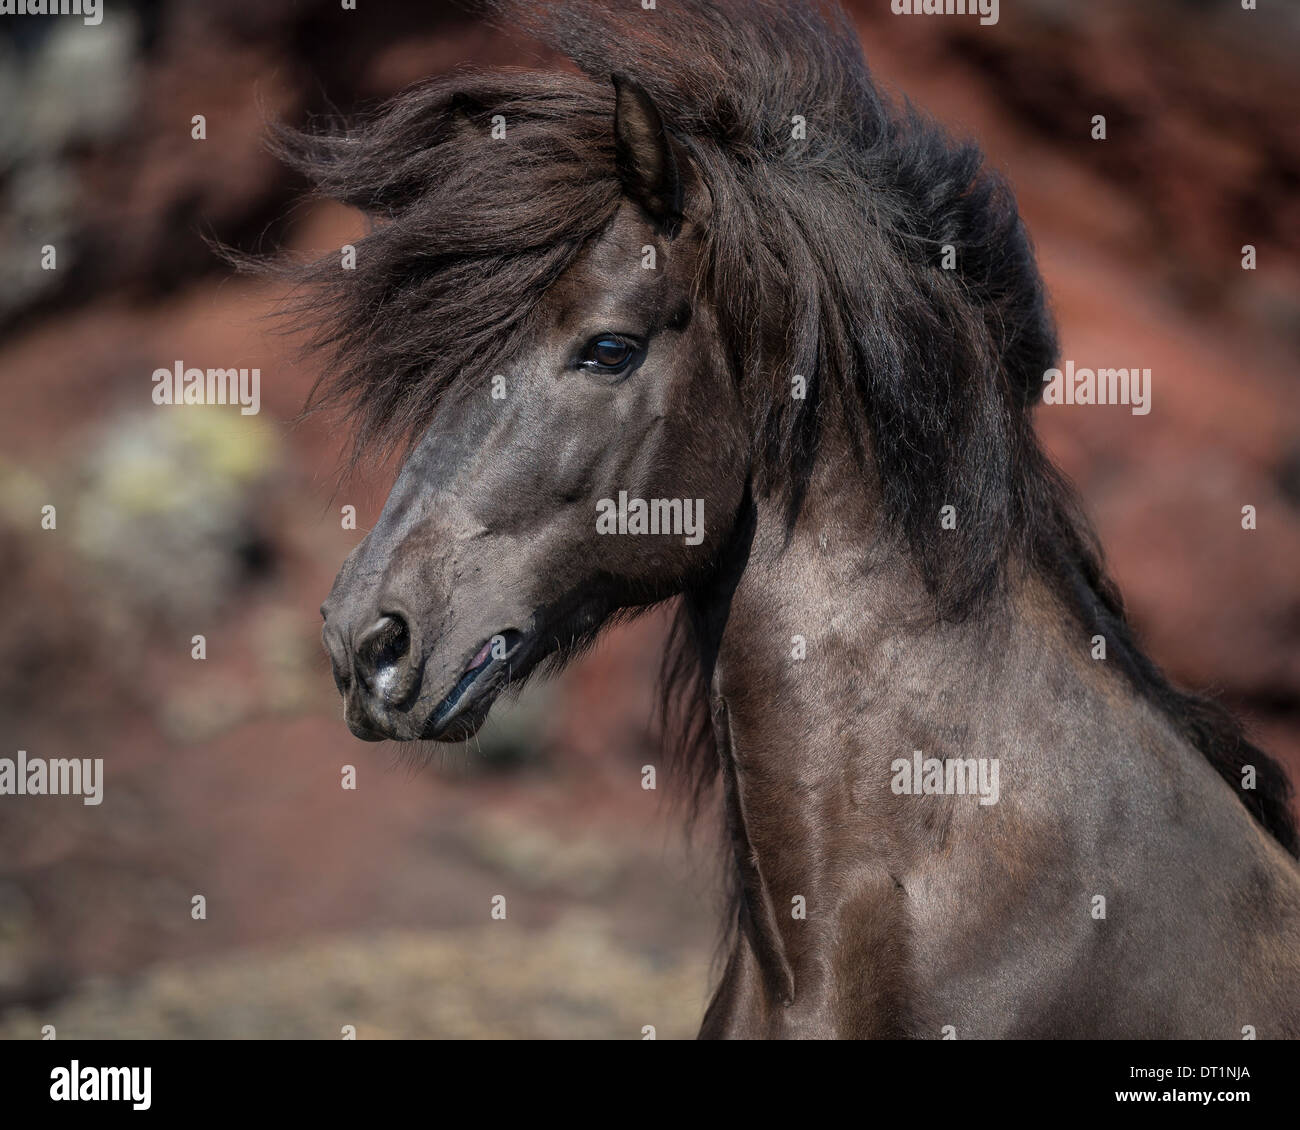 Black Icelandic Horse, Iceland Stock Photo